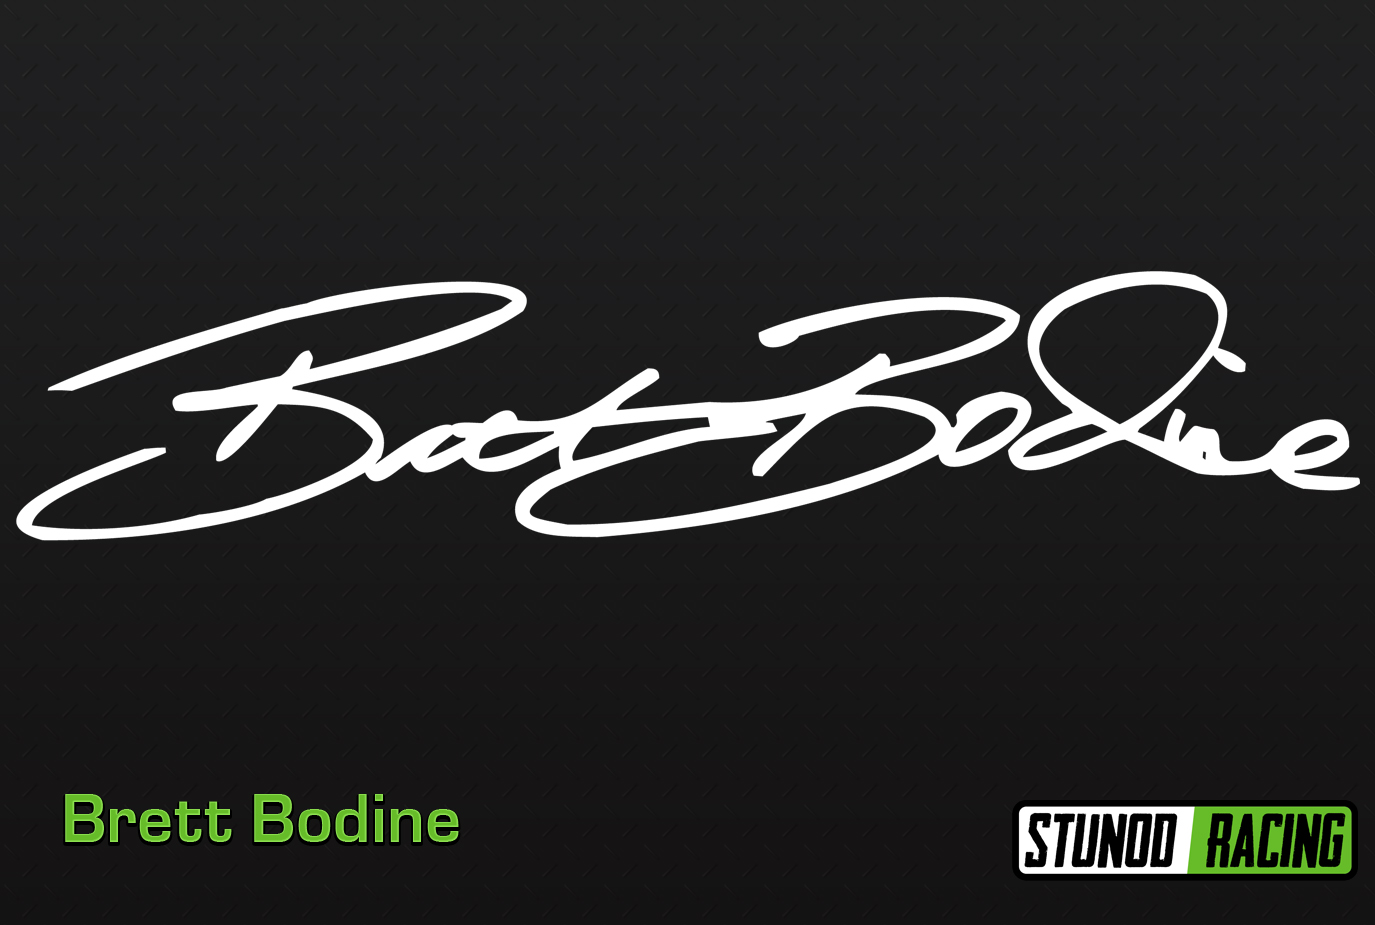 StunodRacing-Brett_Bodine-Signature.jpg